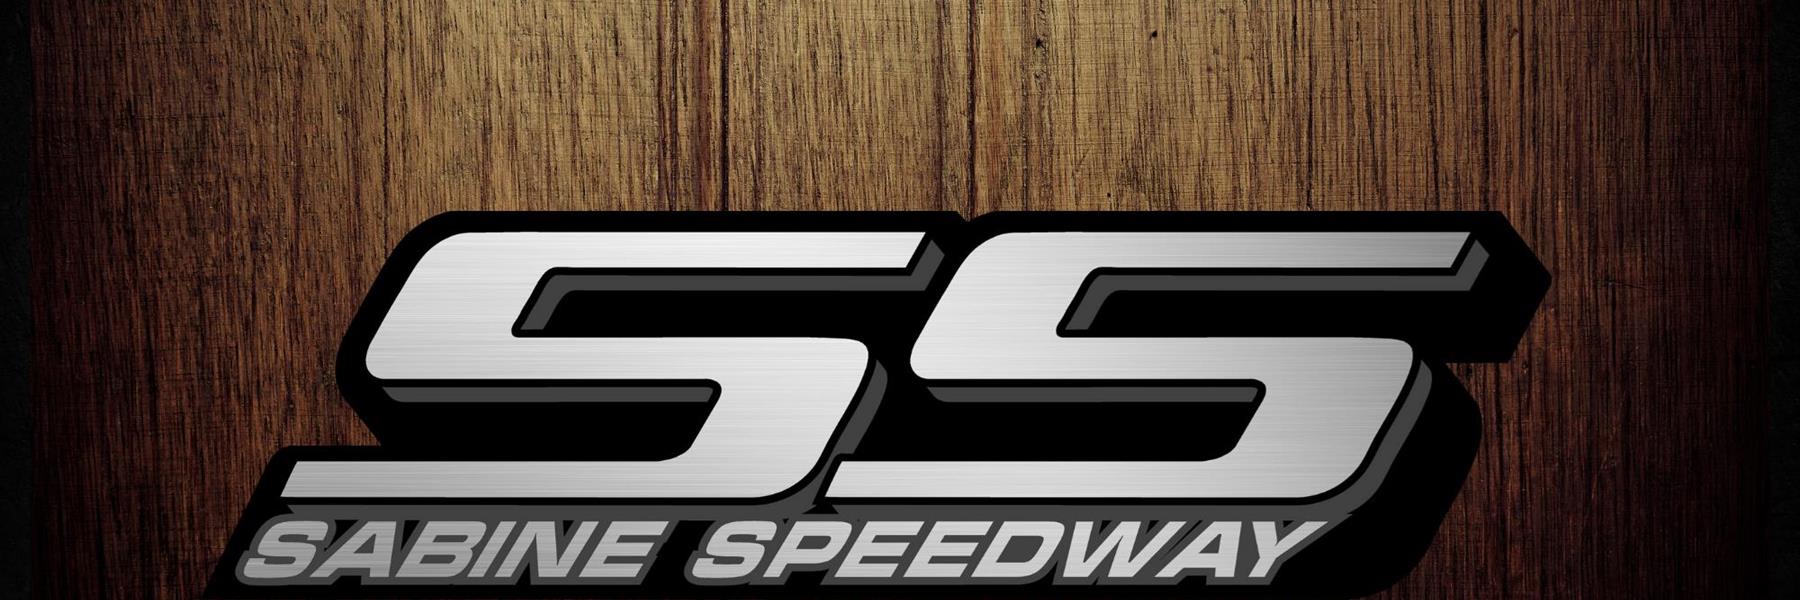 8/19/2022 - Sabine Speedway